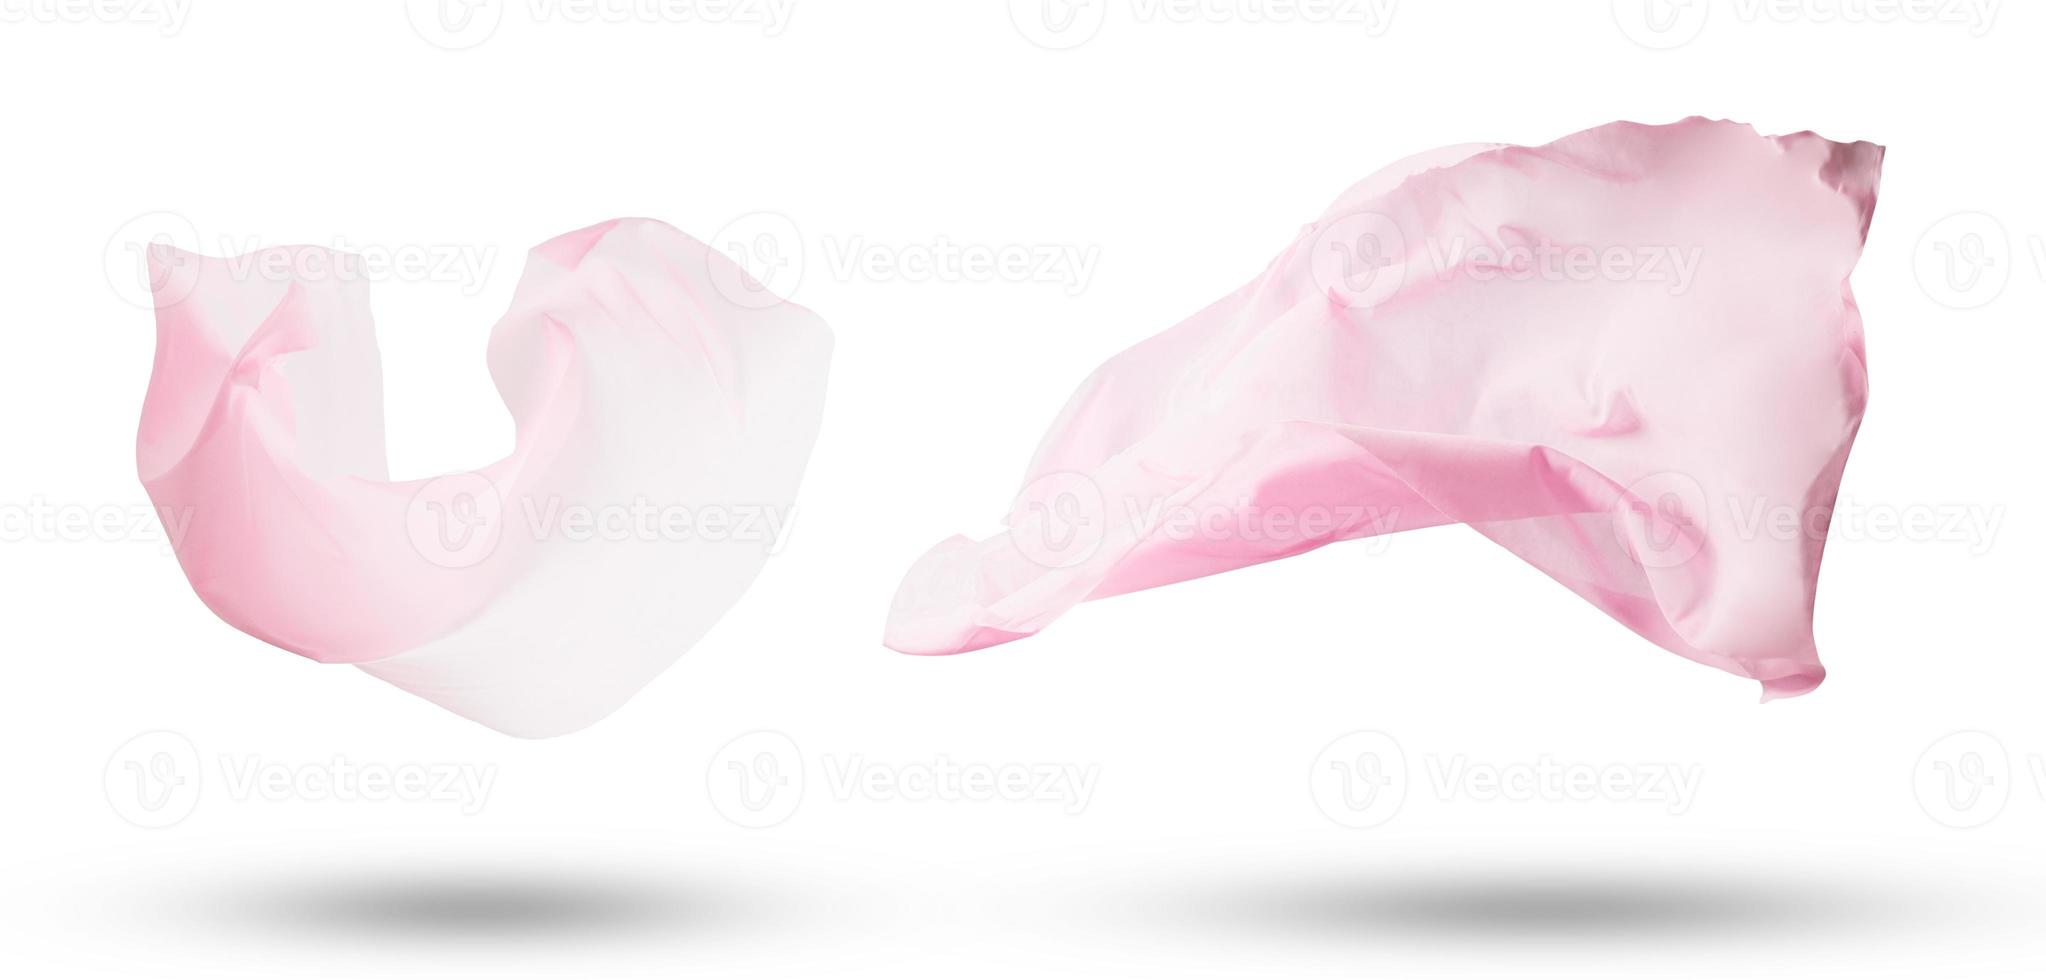 gladde elegante transparante roze doek foto